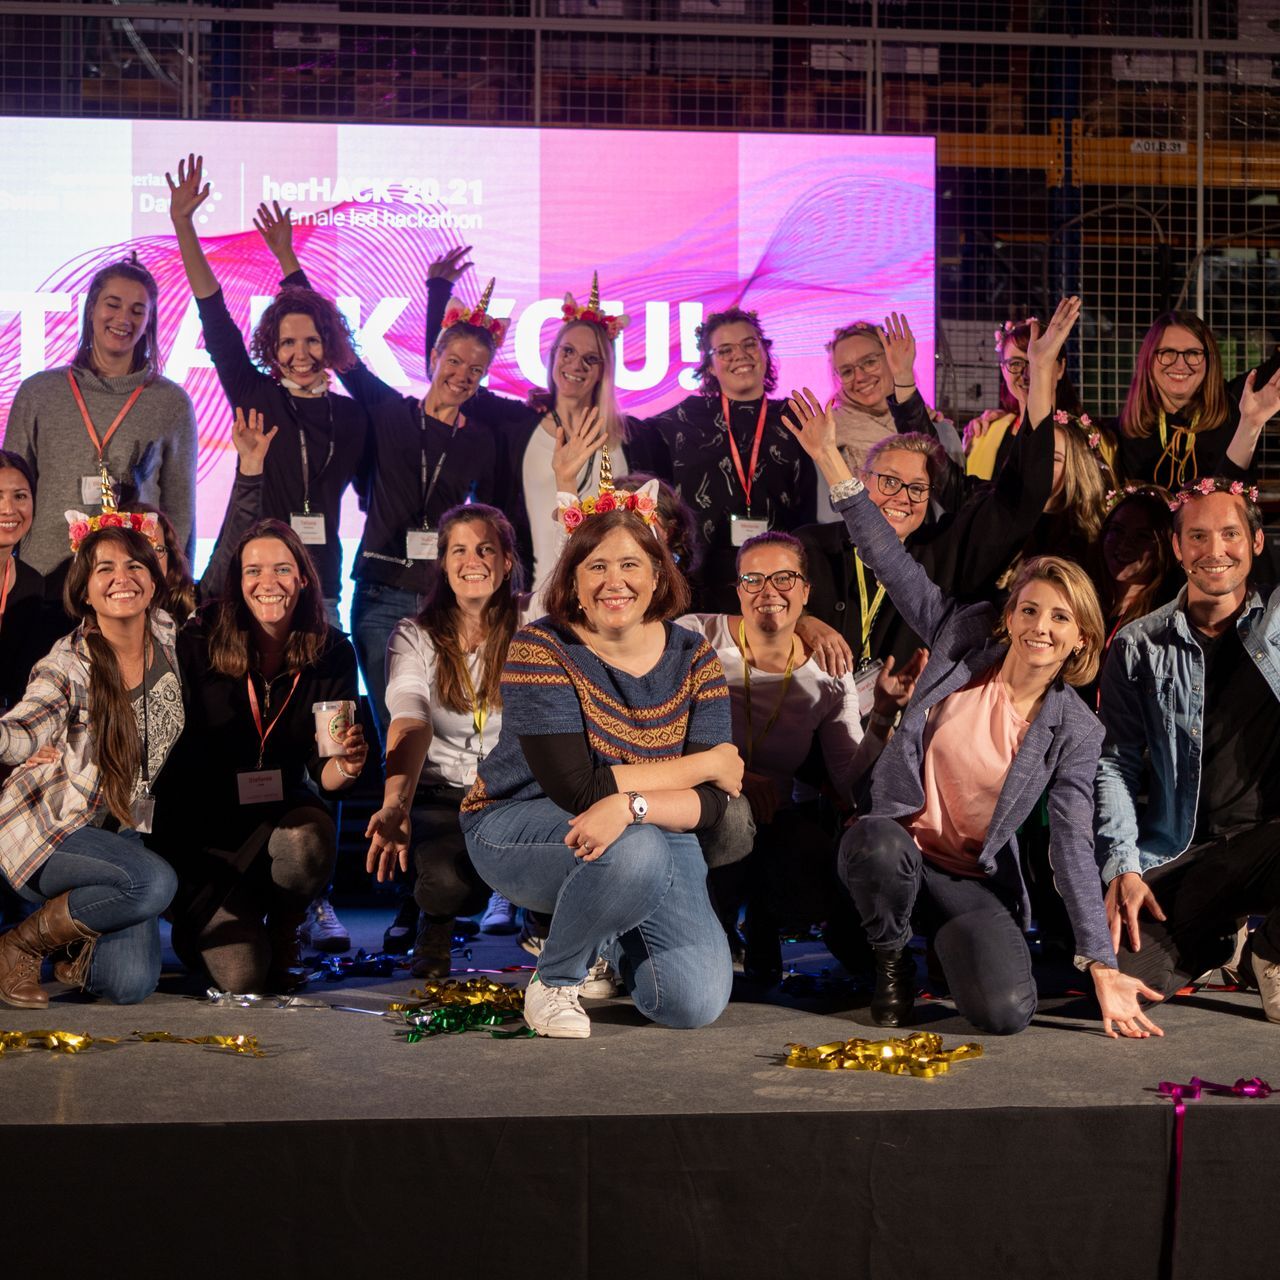 De "HerHack" hackaton voor vrouwen, georganiseerd op 6 en 7 november als onderdeel van de "Swiss Digital Day", werd gewonnen door Team Iconics, gevormd door Melanie Menge, Fiona Hediger, Yamina Siegrist, Maria Kliesch en Elisabeth MacKenzie (Foto: Moritz Schmid )